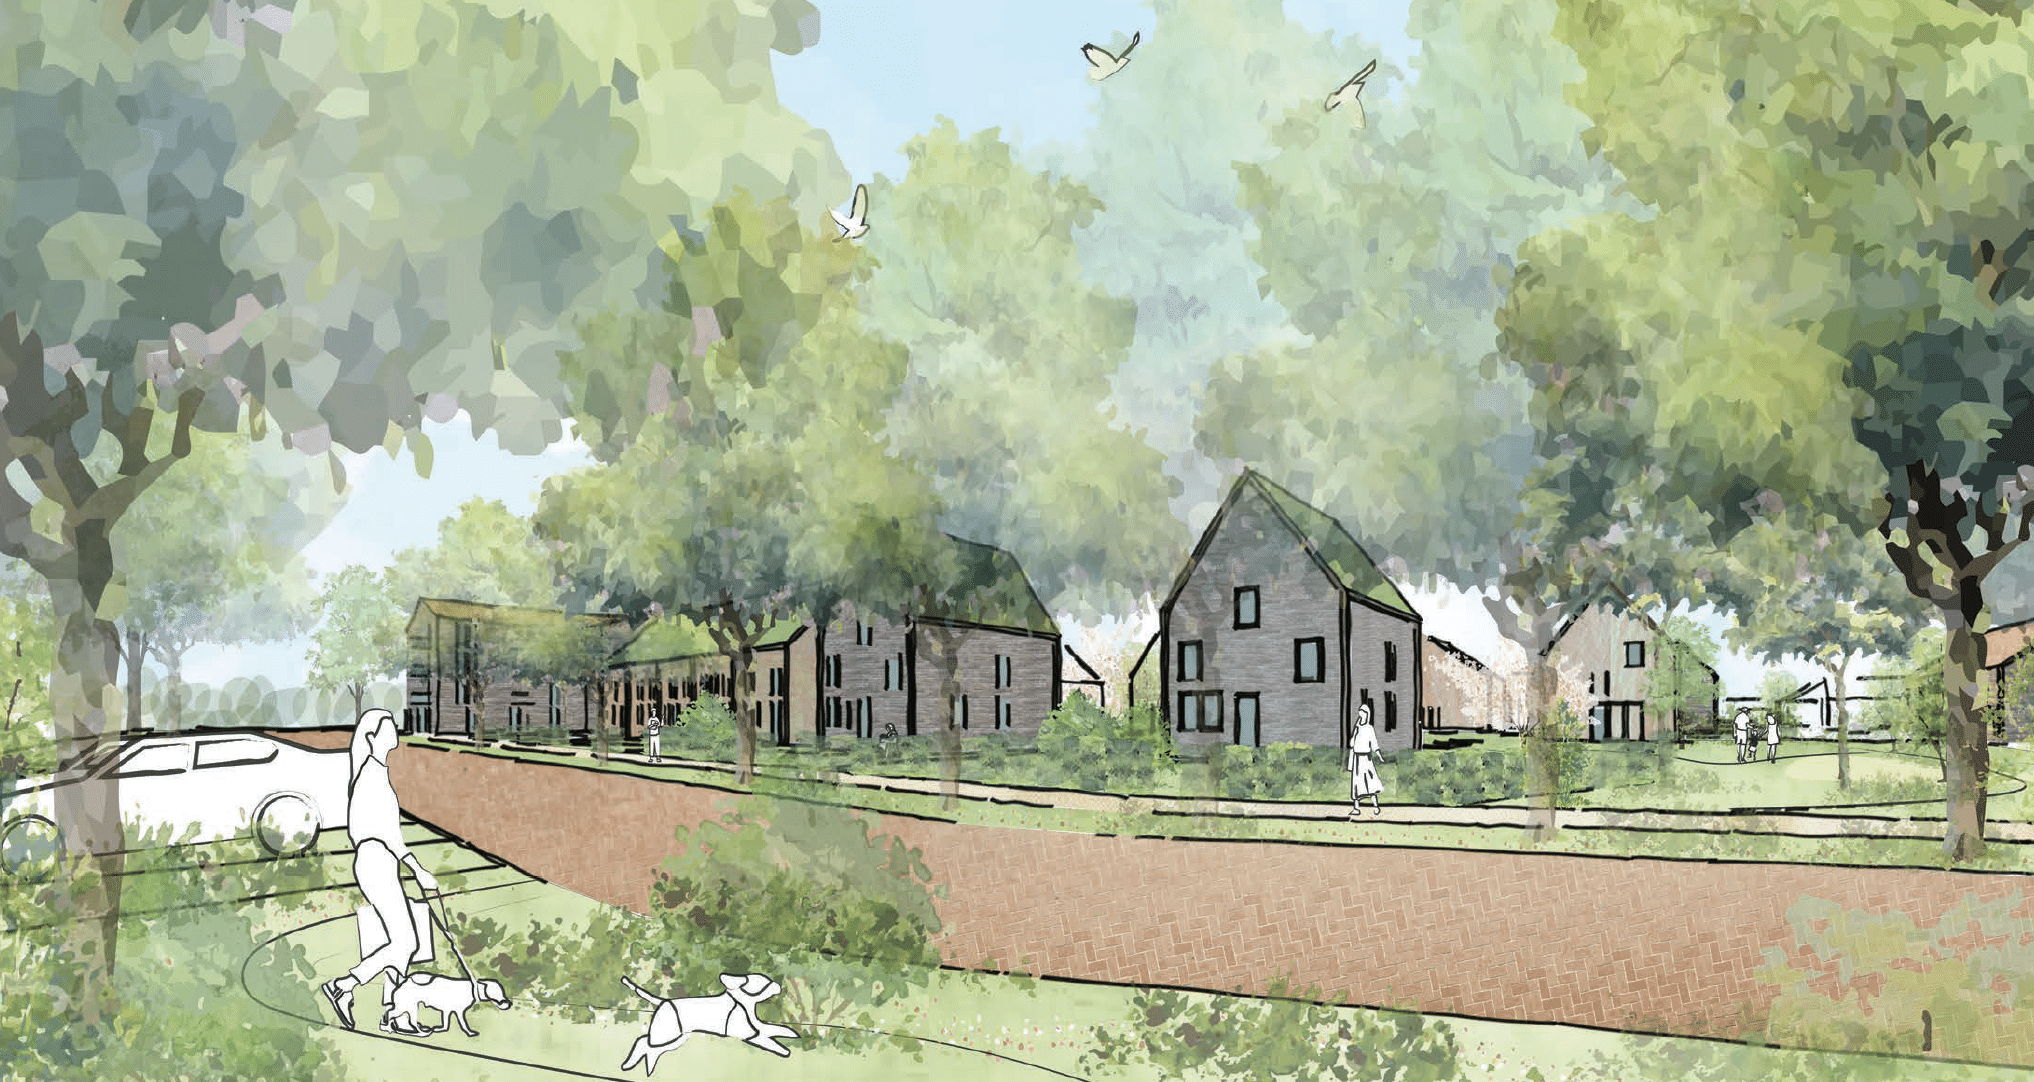 Impressie afbeelding van de toekomstige wijk van 't Suyt 2 met woningen en buren die elkaar groeten.